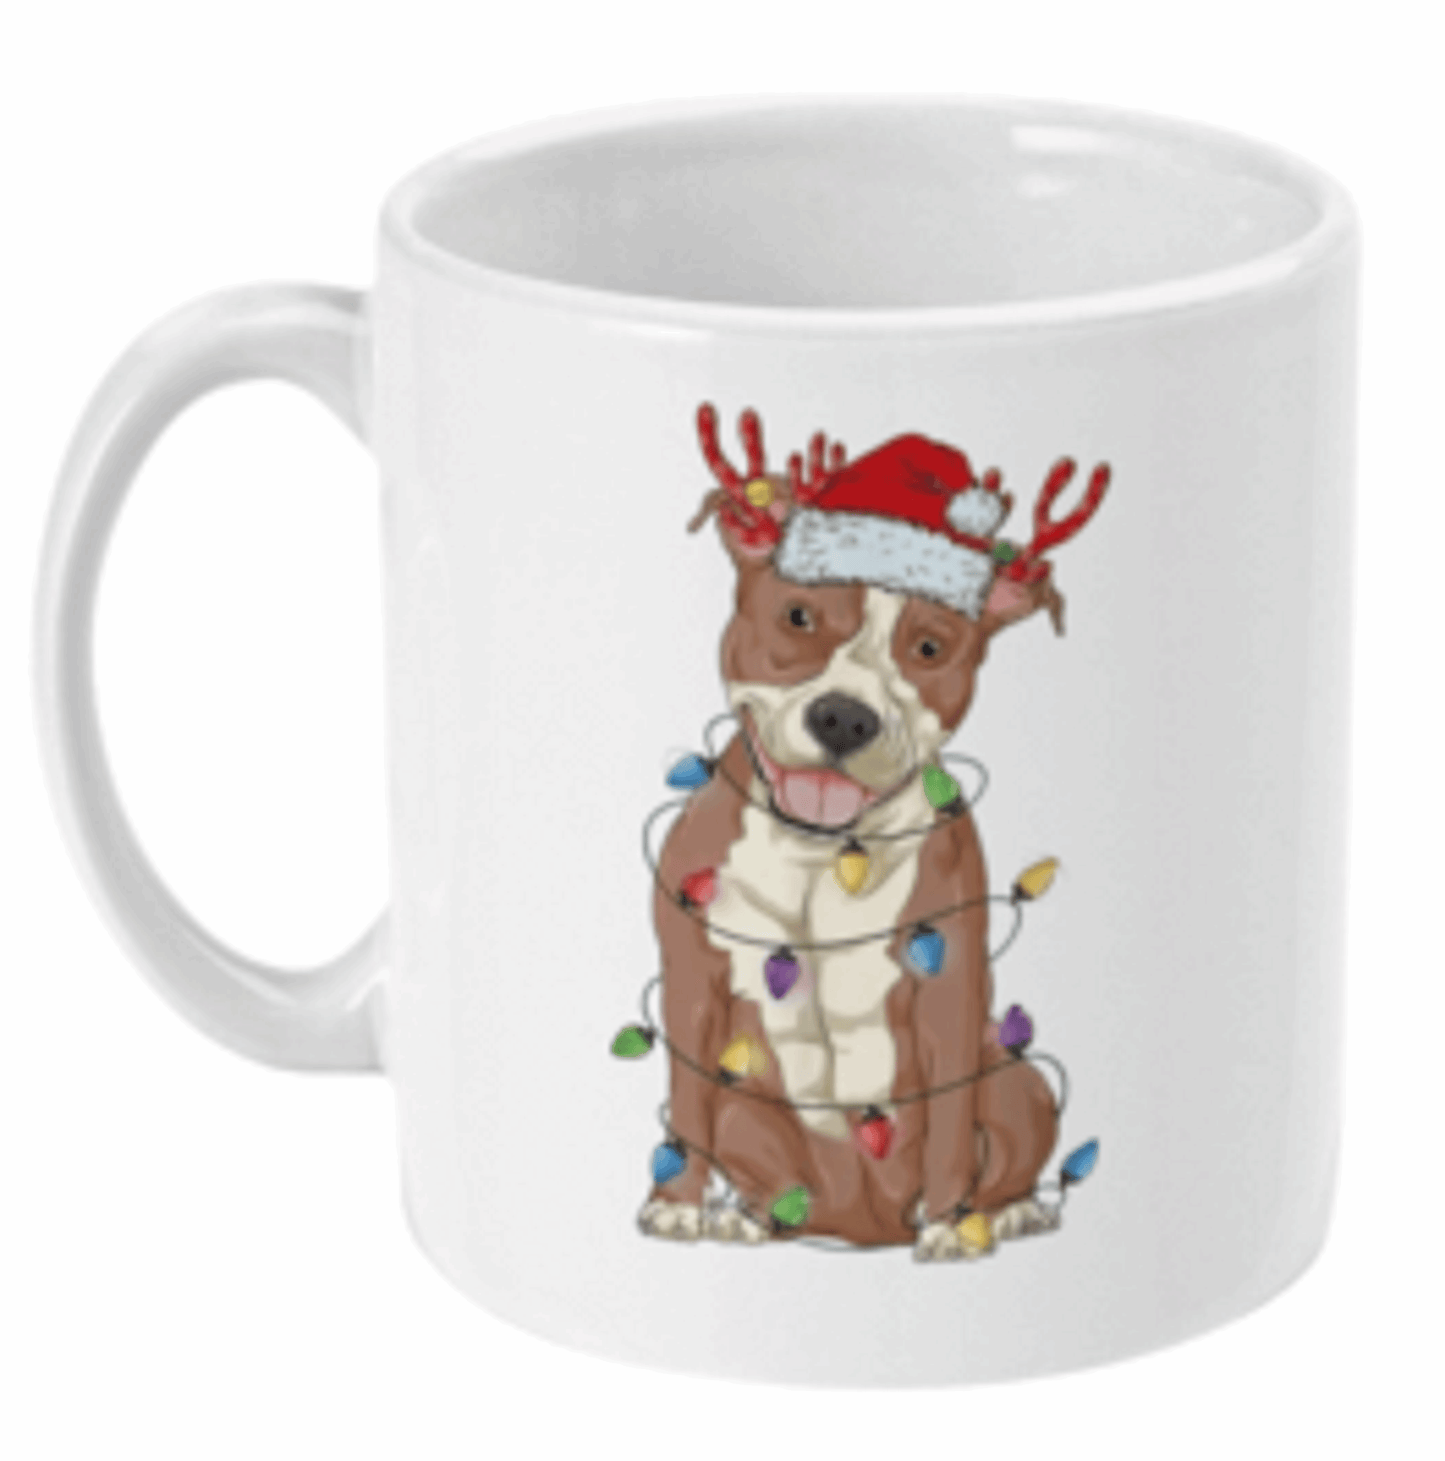  Christmas Bully Dog Christmas Coffee Mug by Free Spirit Accessories sold by Free Spirit Accessories